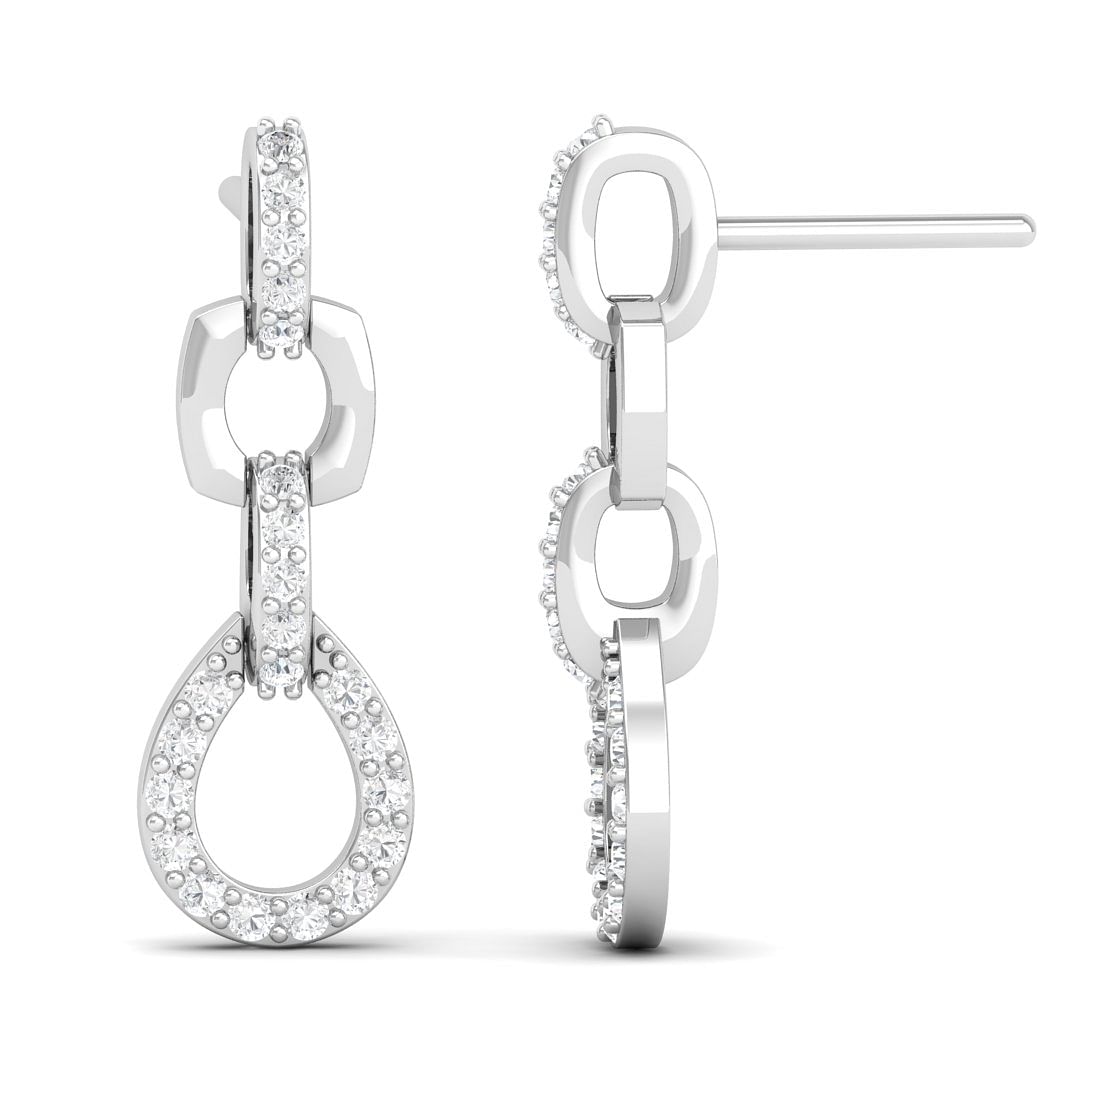 10k White Gold Drops Of Heaven Diamond Earrings For Gift